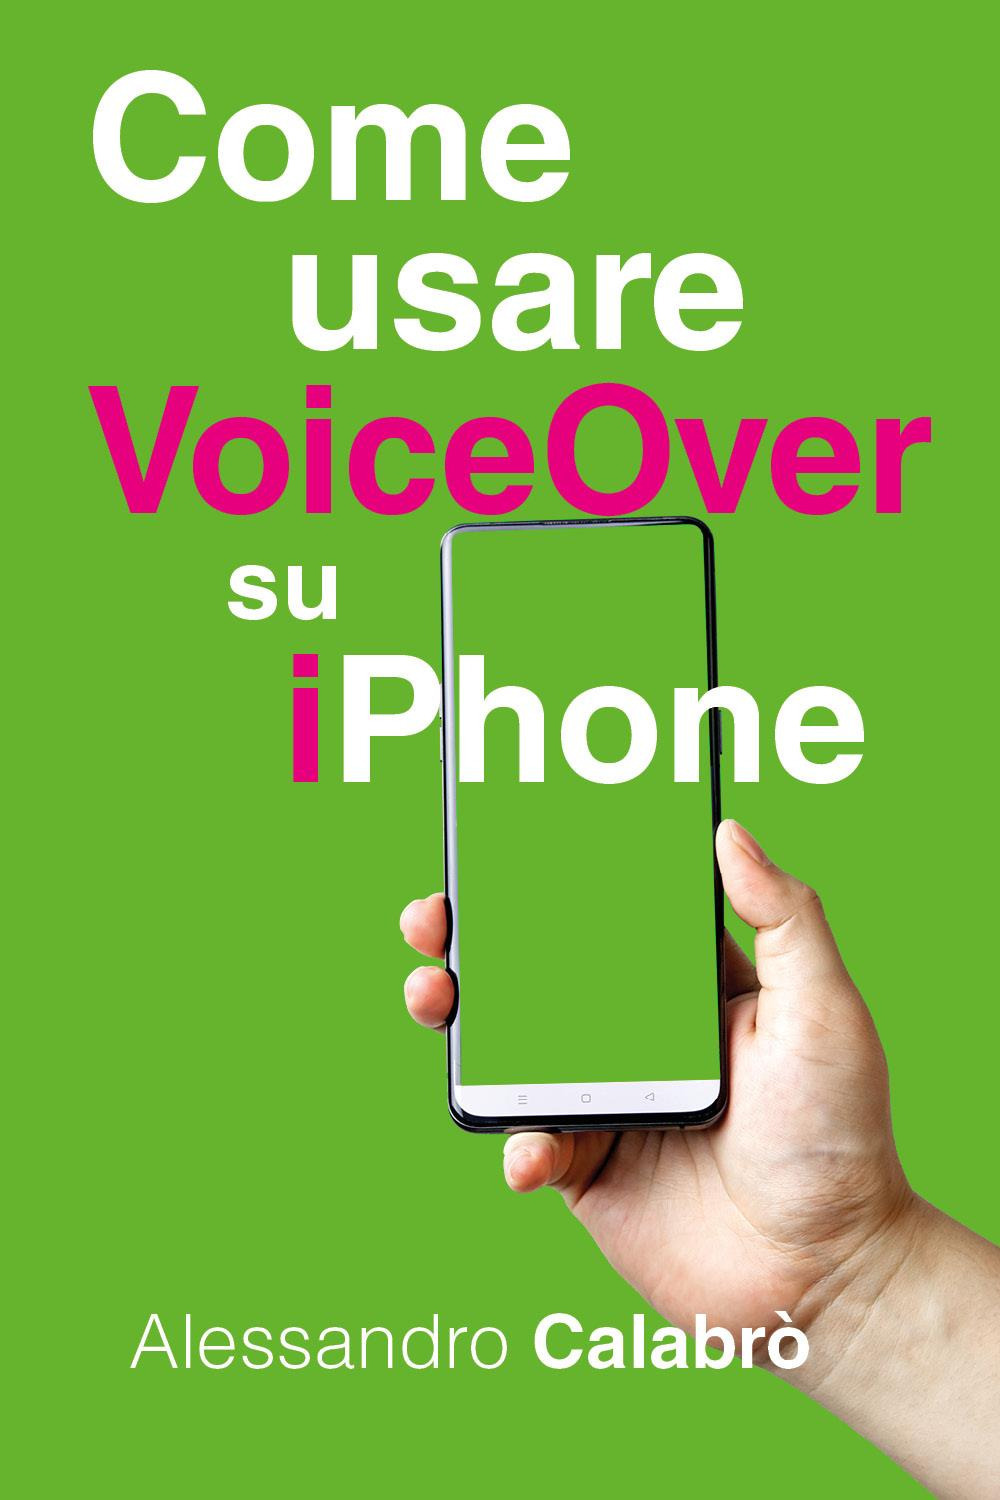 Come usare VoiceOver su iPhone